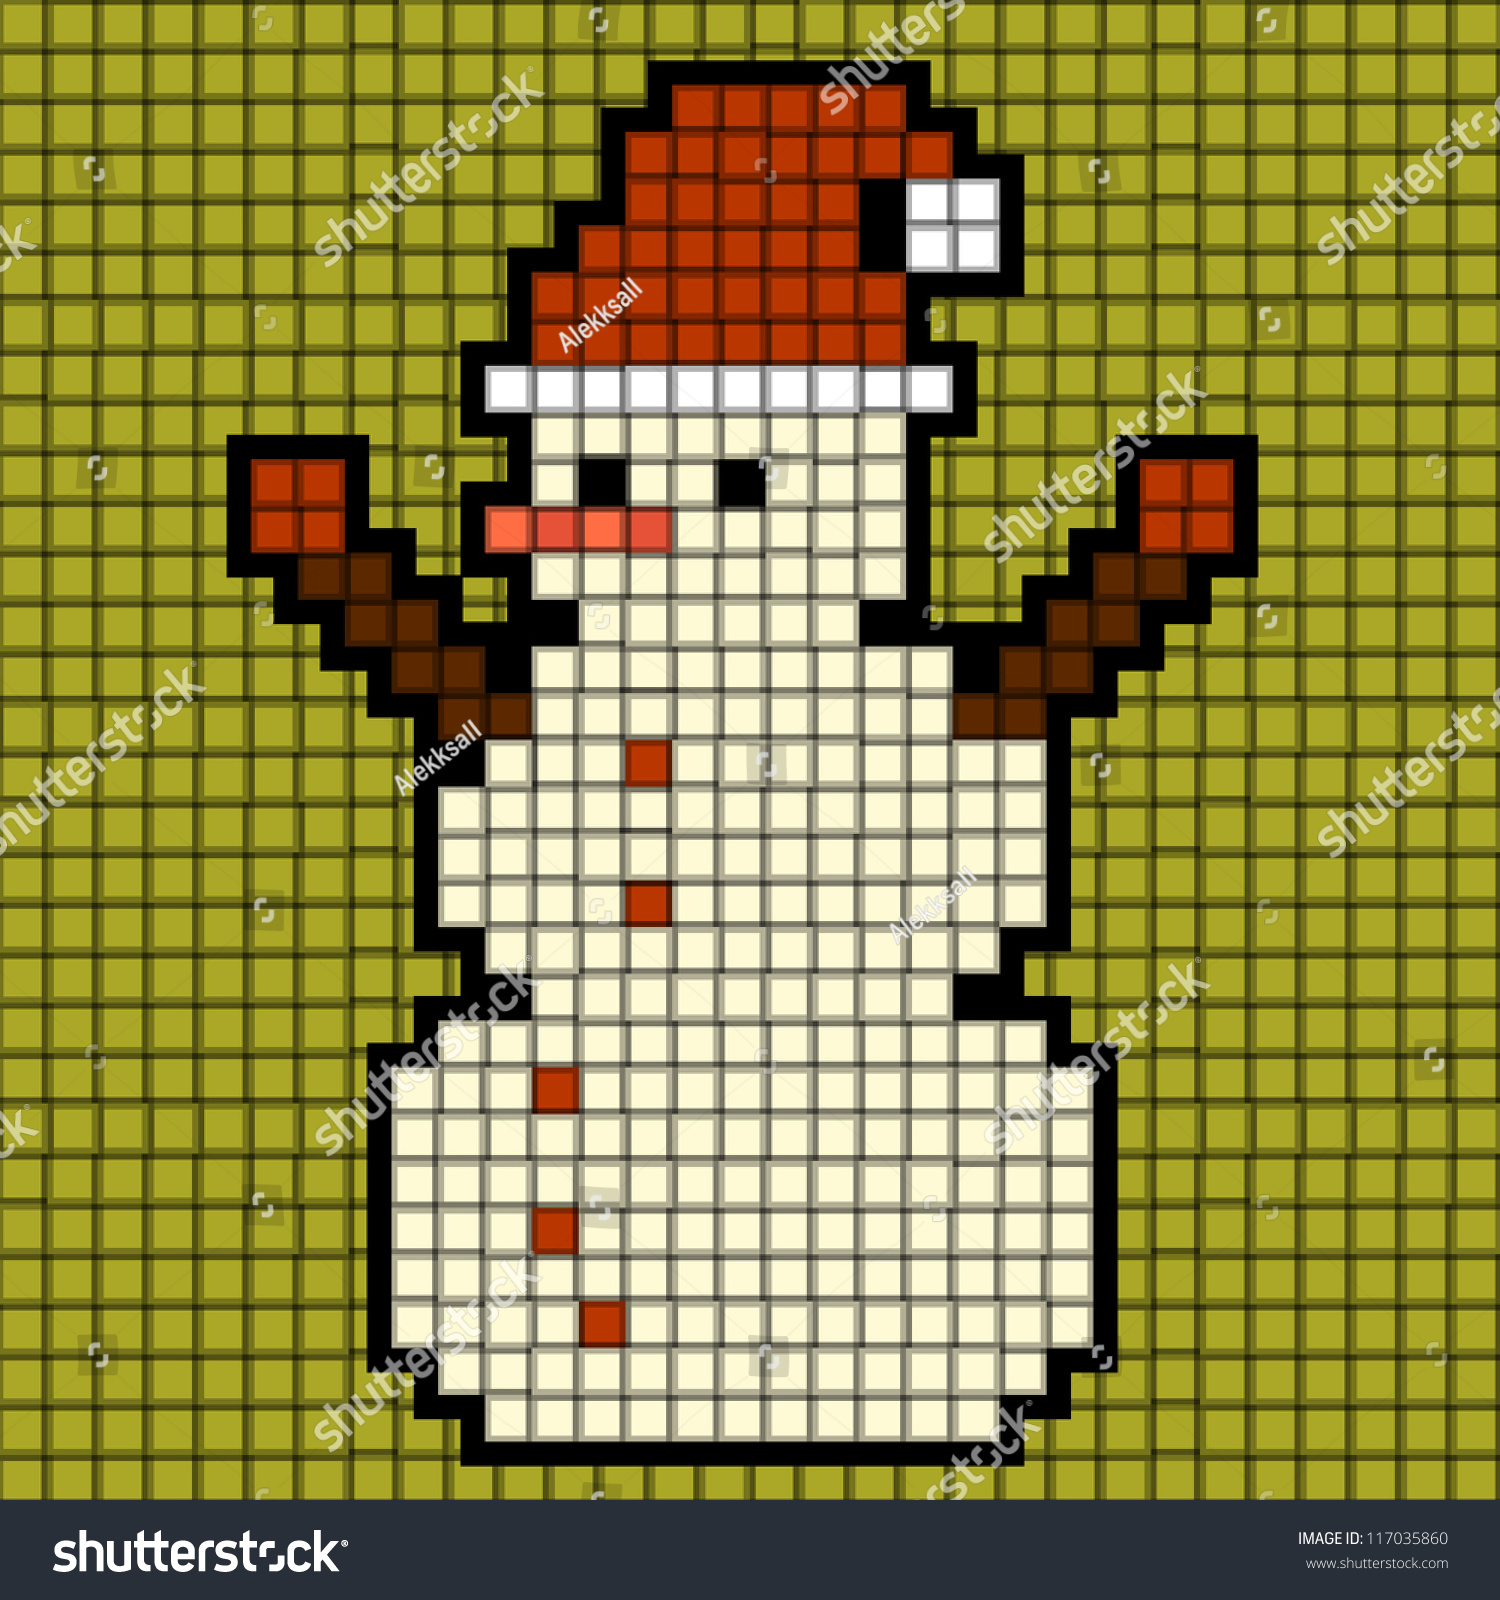 Снеговик из пикселей